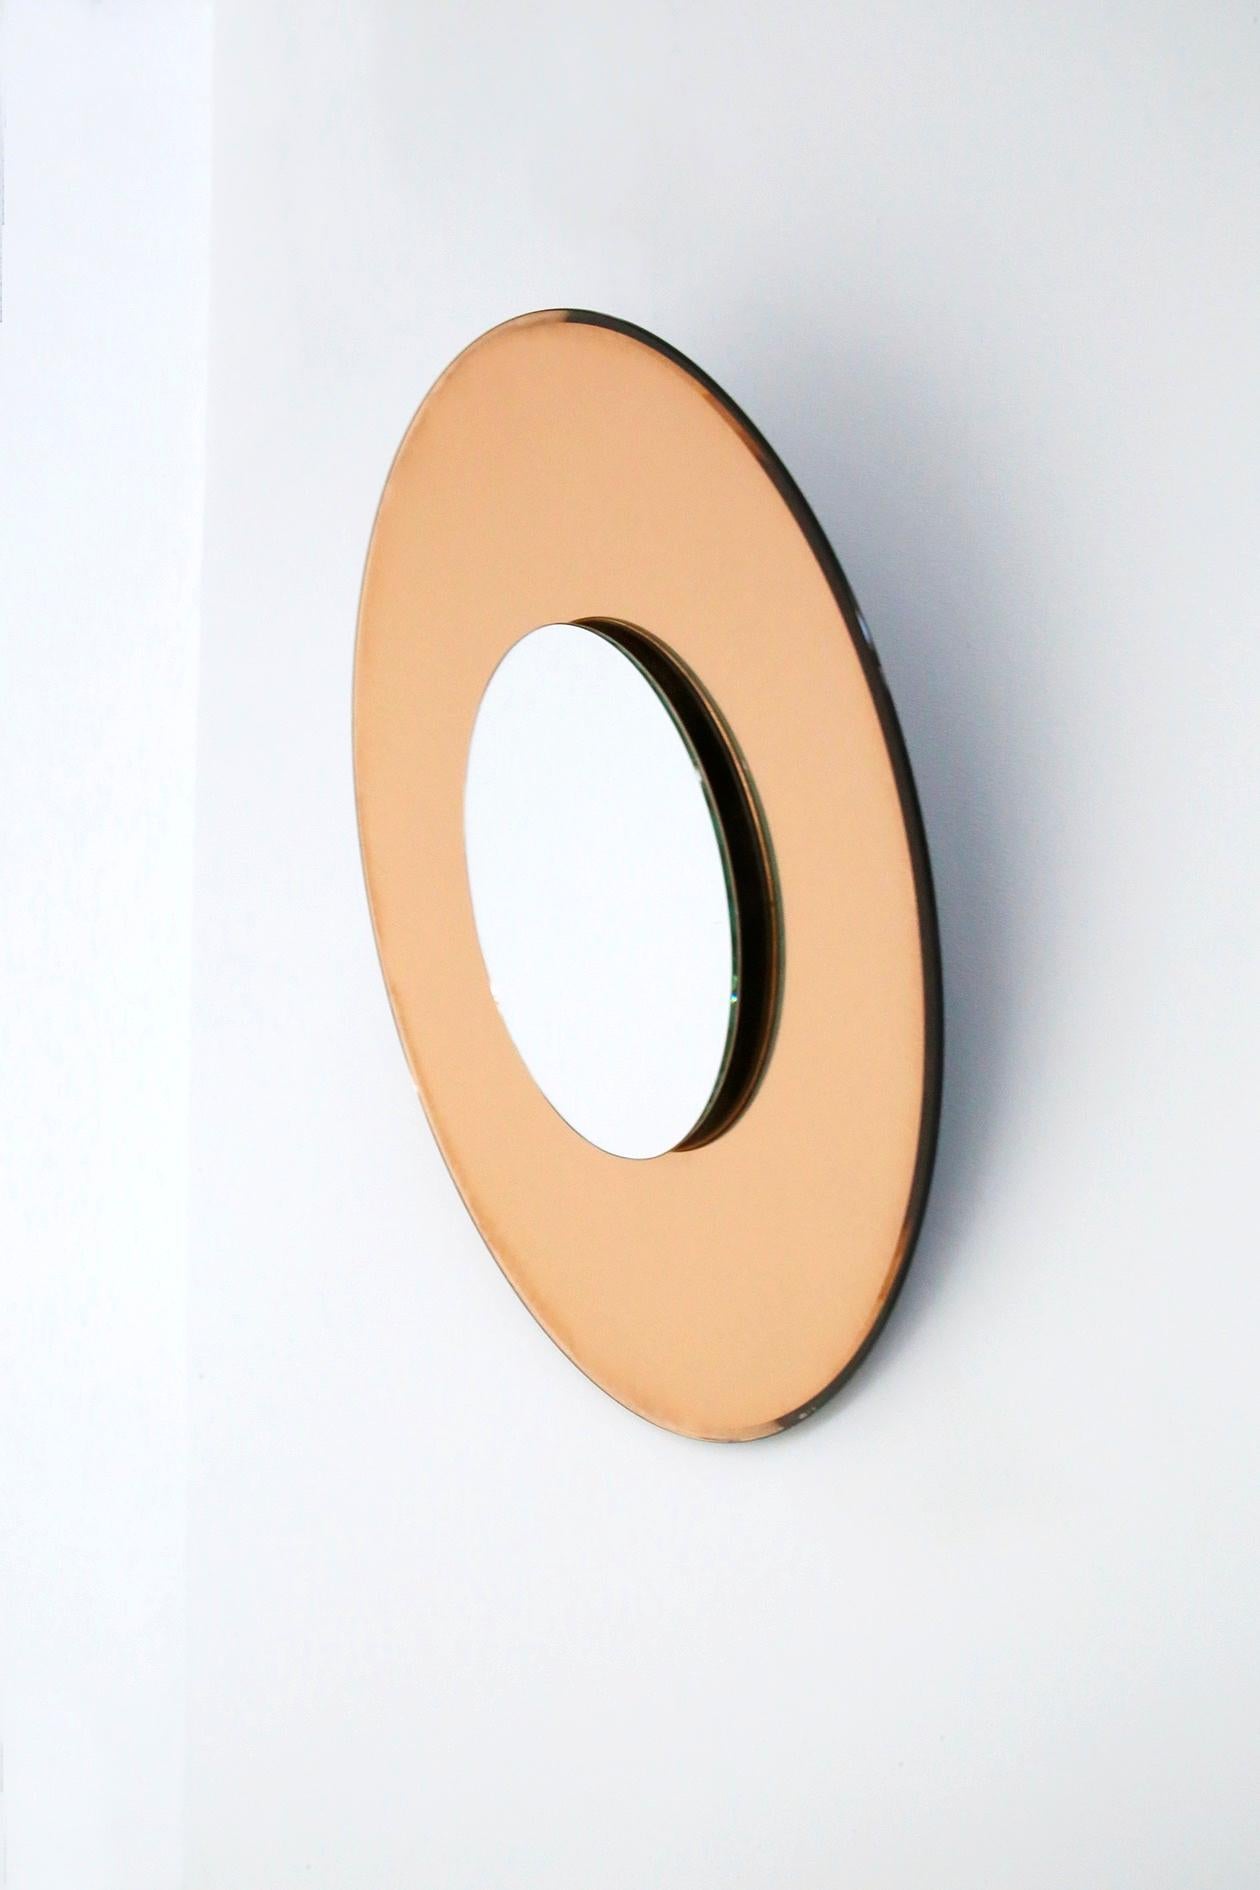 Modern Contemporary Orange Mirror in Style Fontana Arte by Effetto Vetro For Sale